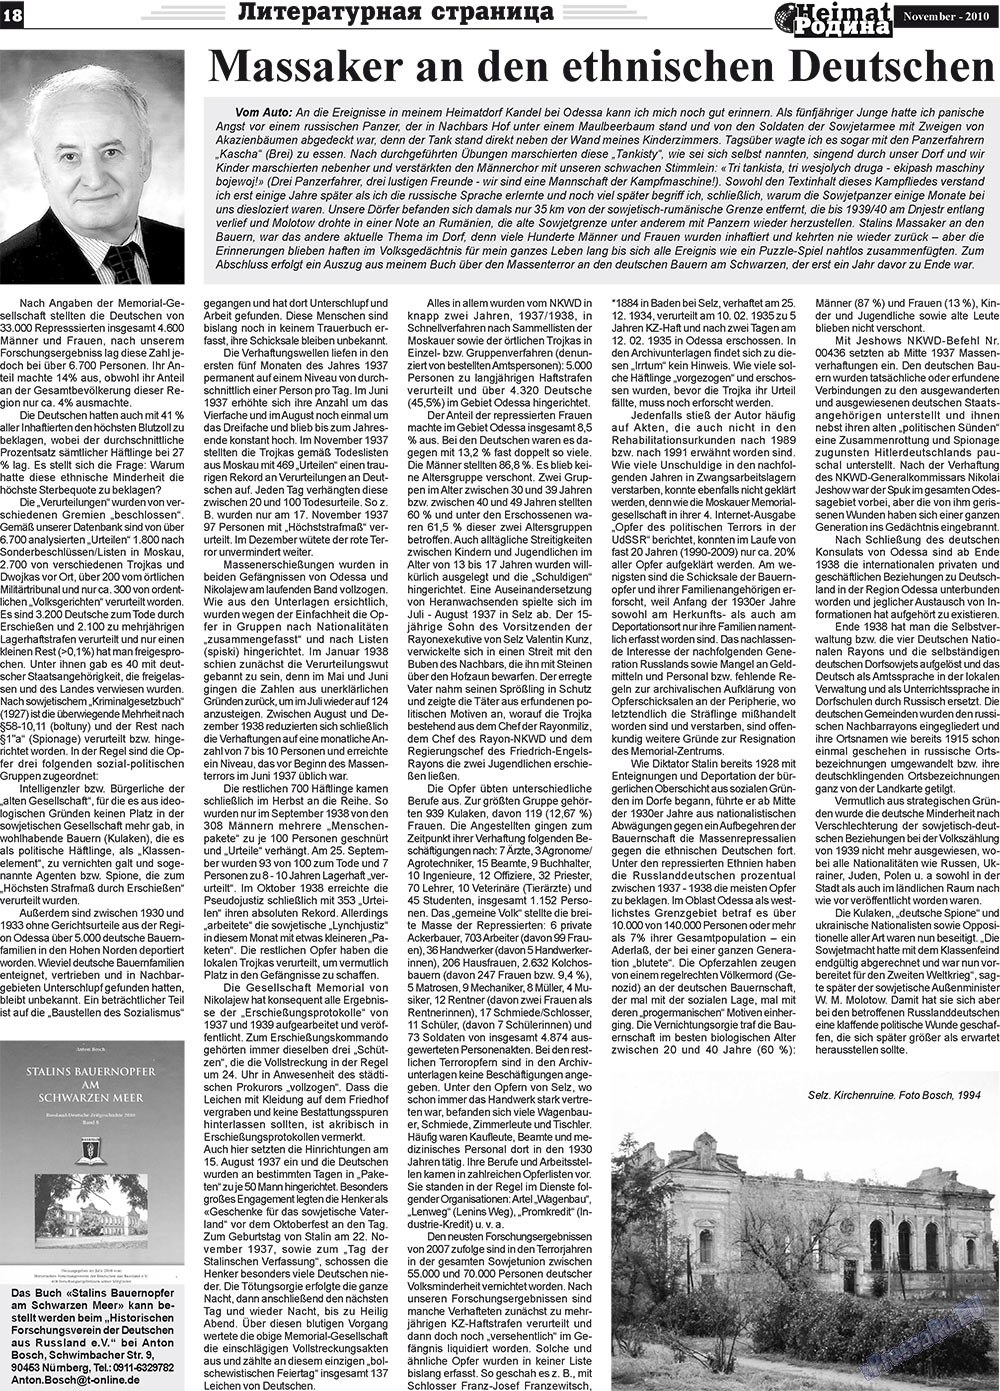 Heimat-Родина (газета). 2010 год, номер 11, стр. 18